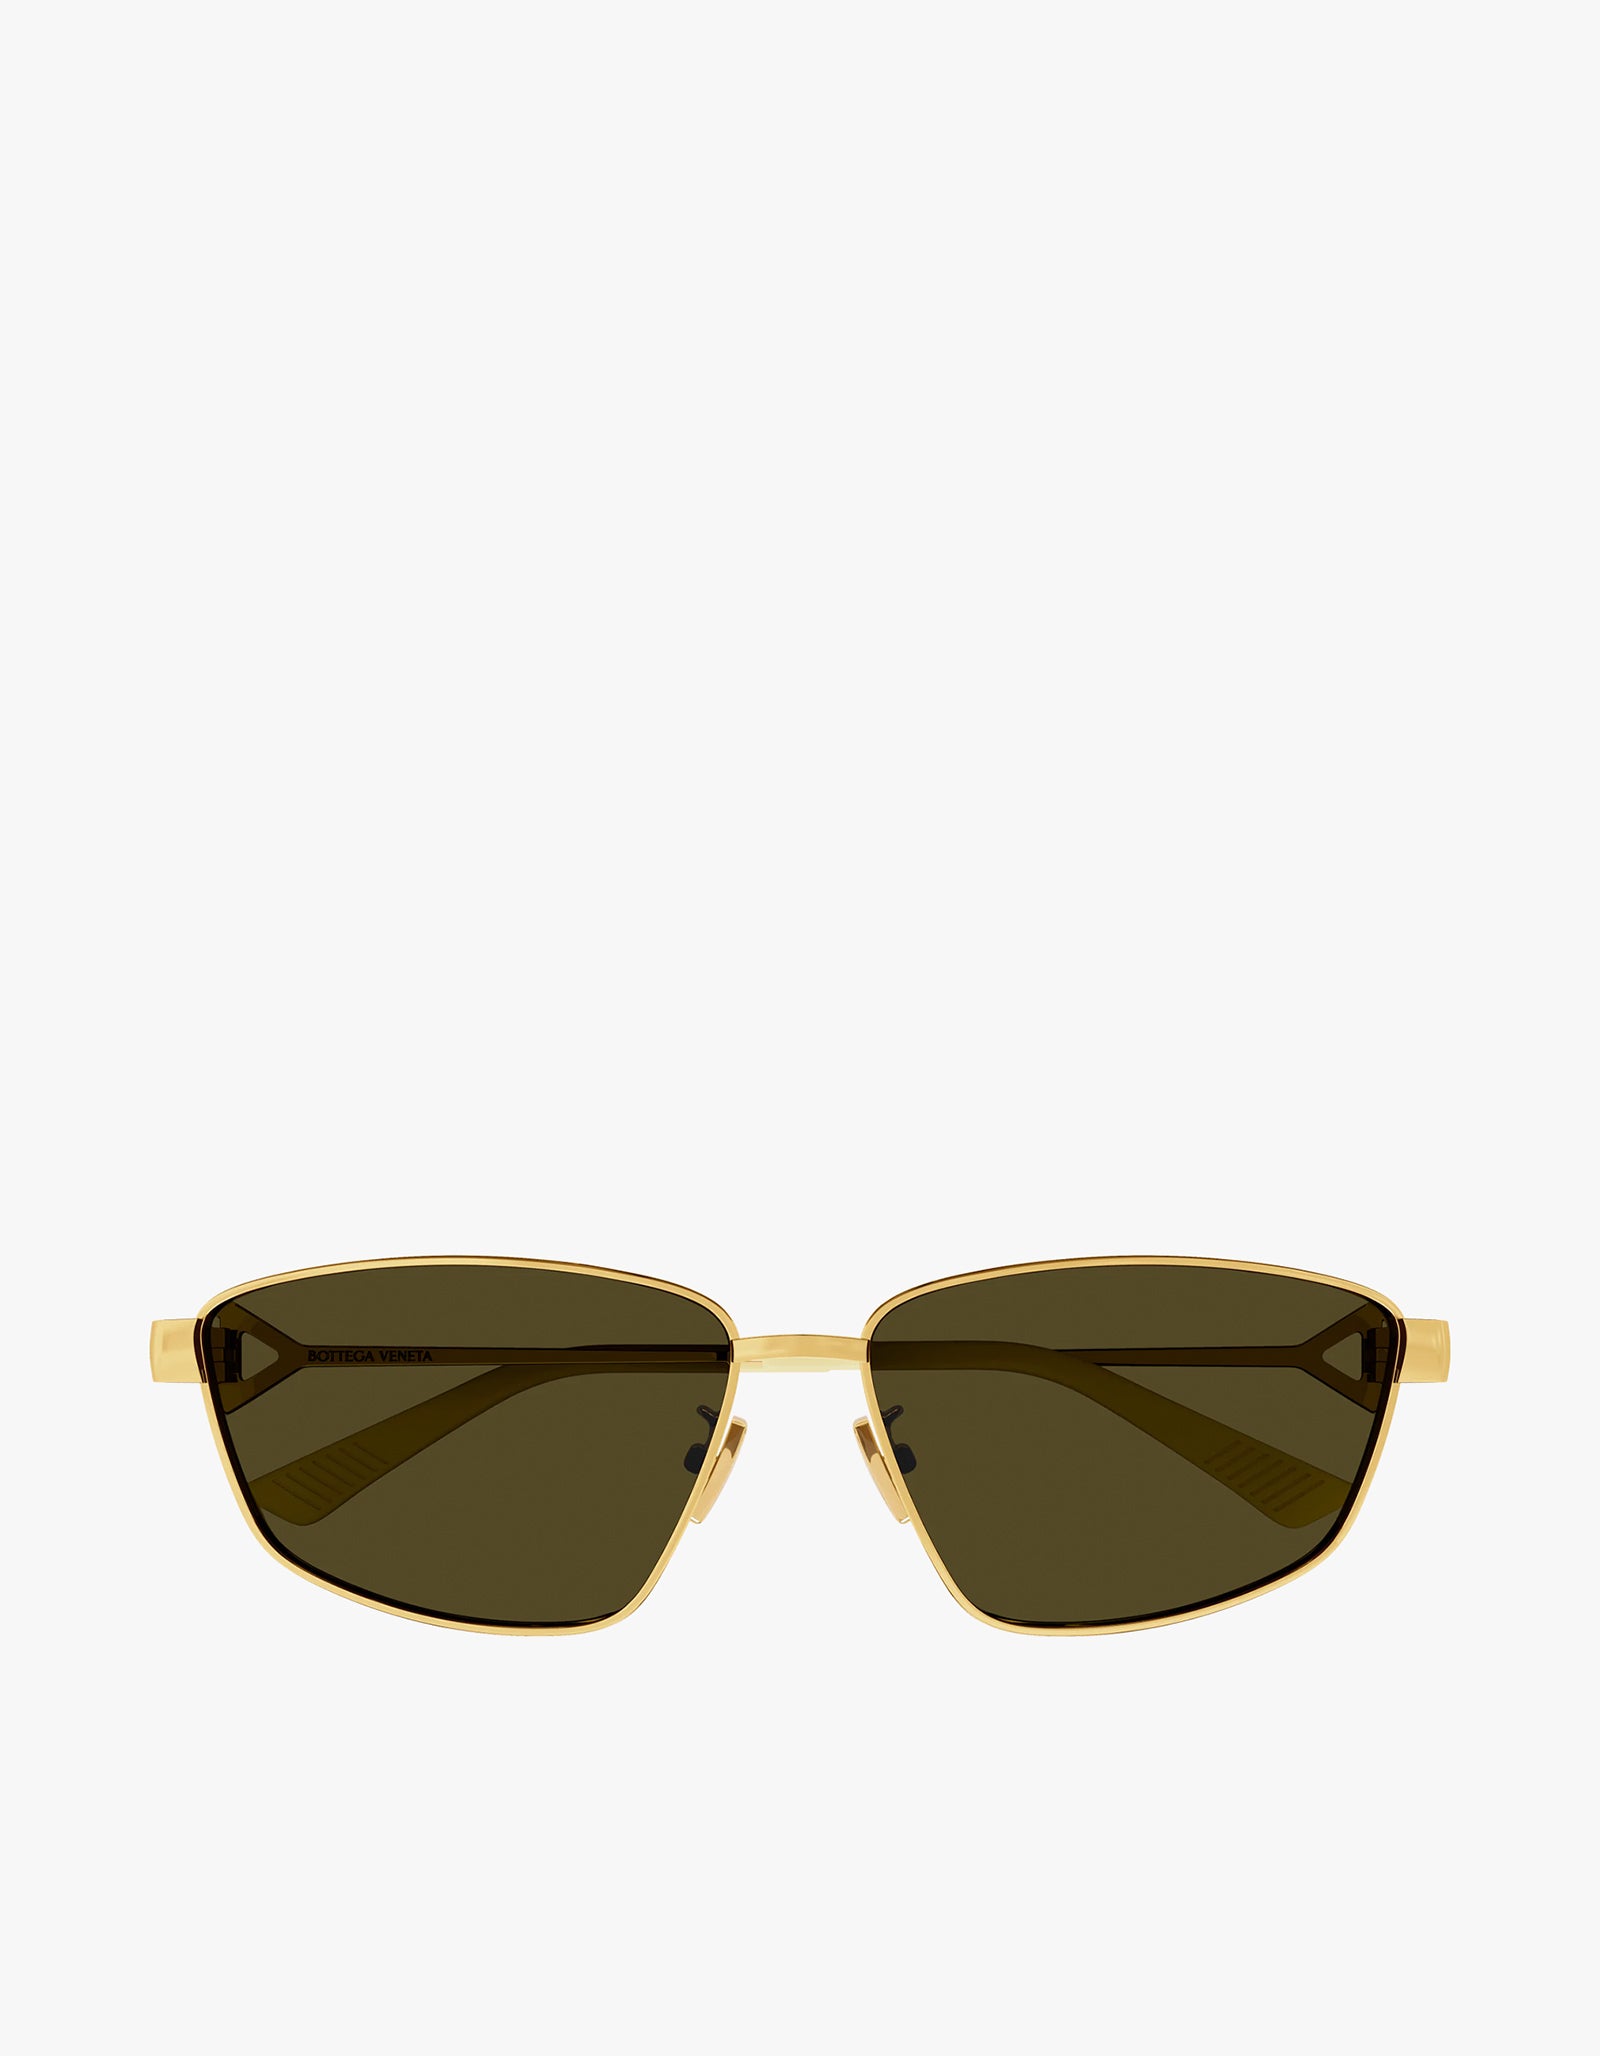 Bottega Veneta BV1270S 002 Sunglasses Tortoise | SmartBuyGlasses India